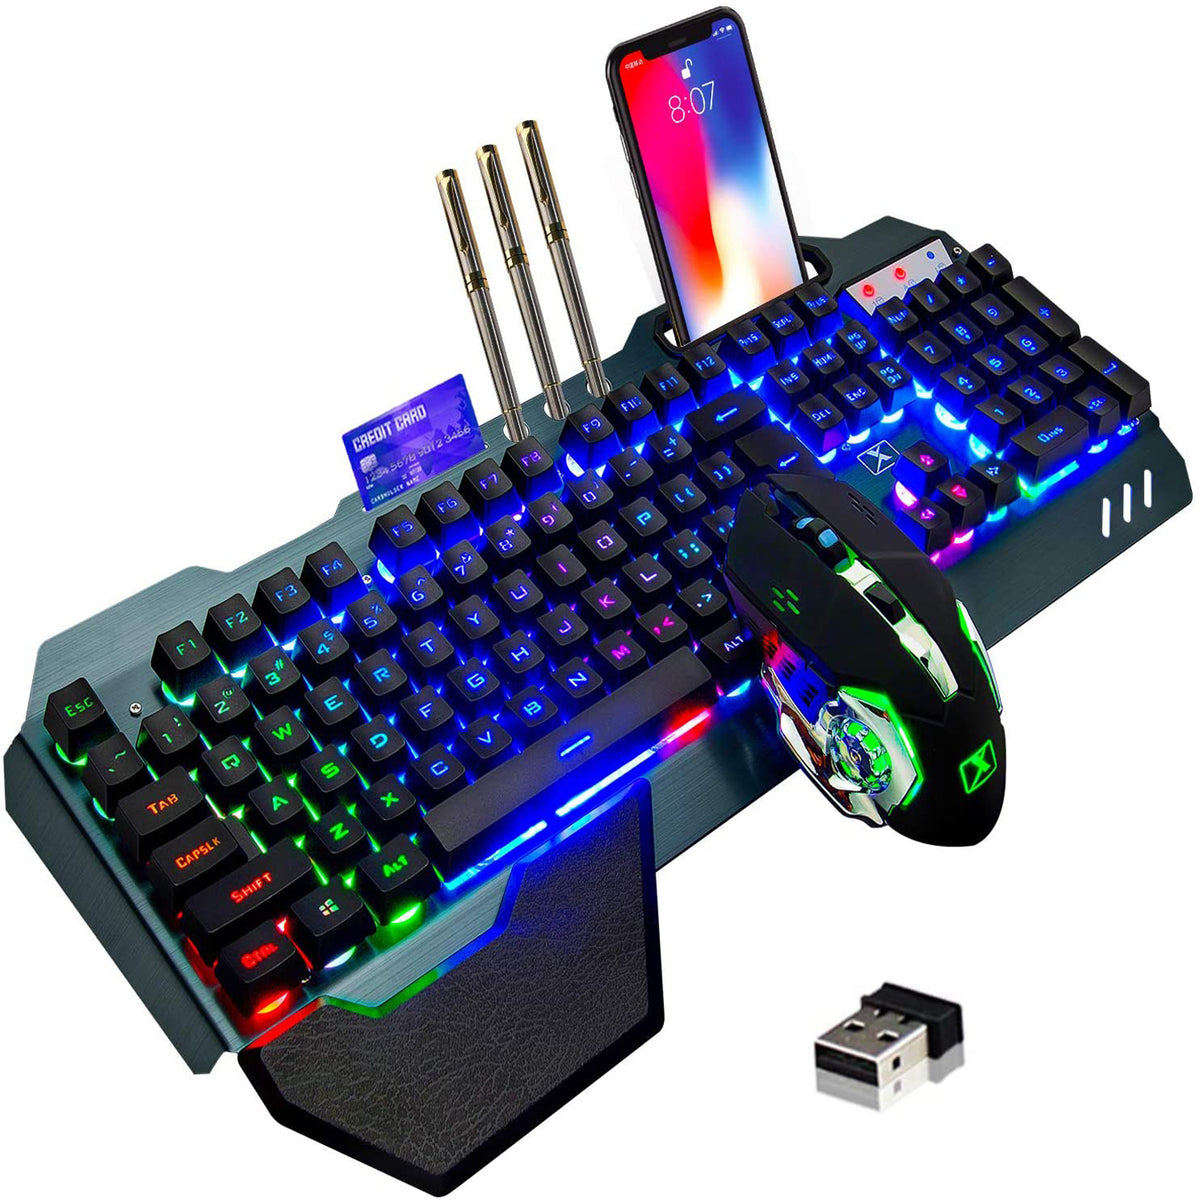 Kabellose Gaming-Tastatur und -Maus, Regenbogen-Hintergrundbeleuchtung, wiederaufladbare Tastatur-Maus mit 3800-mAh-Akku, Metallplatte, abnehmbare Handauflage, mechanische Tastatur und 7-farbige Gaming-Stummschaltmaus für PC-Gamer